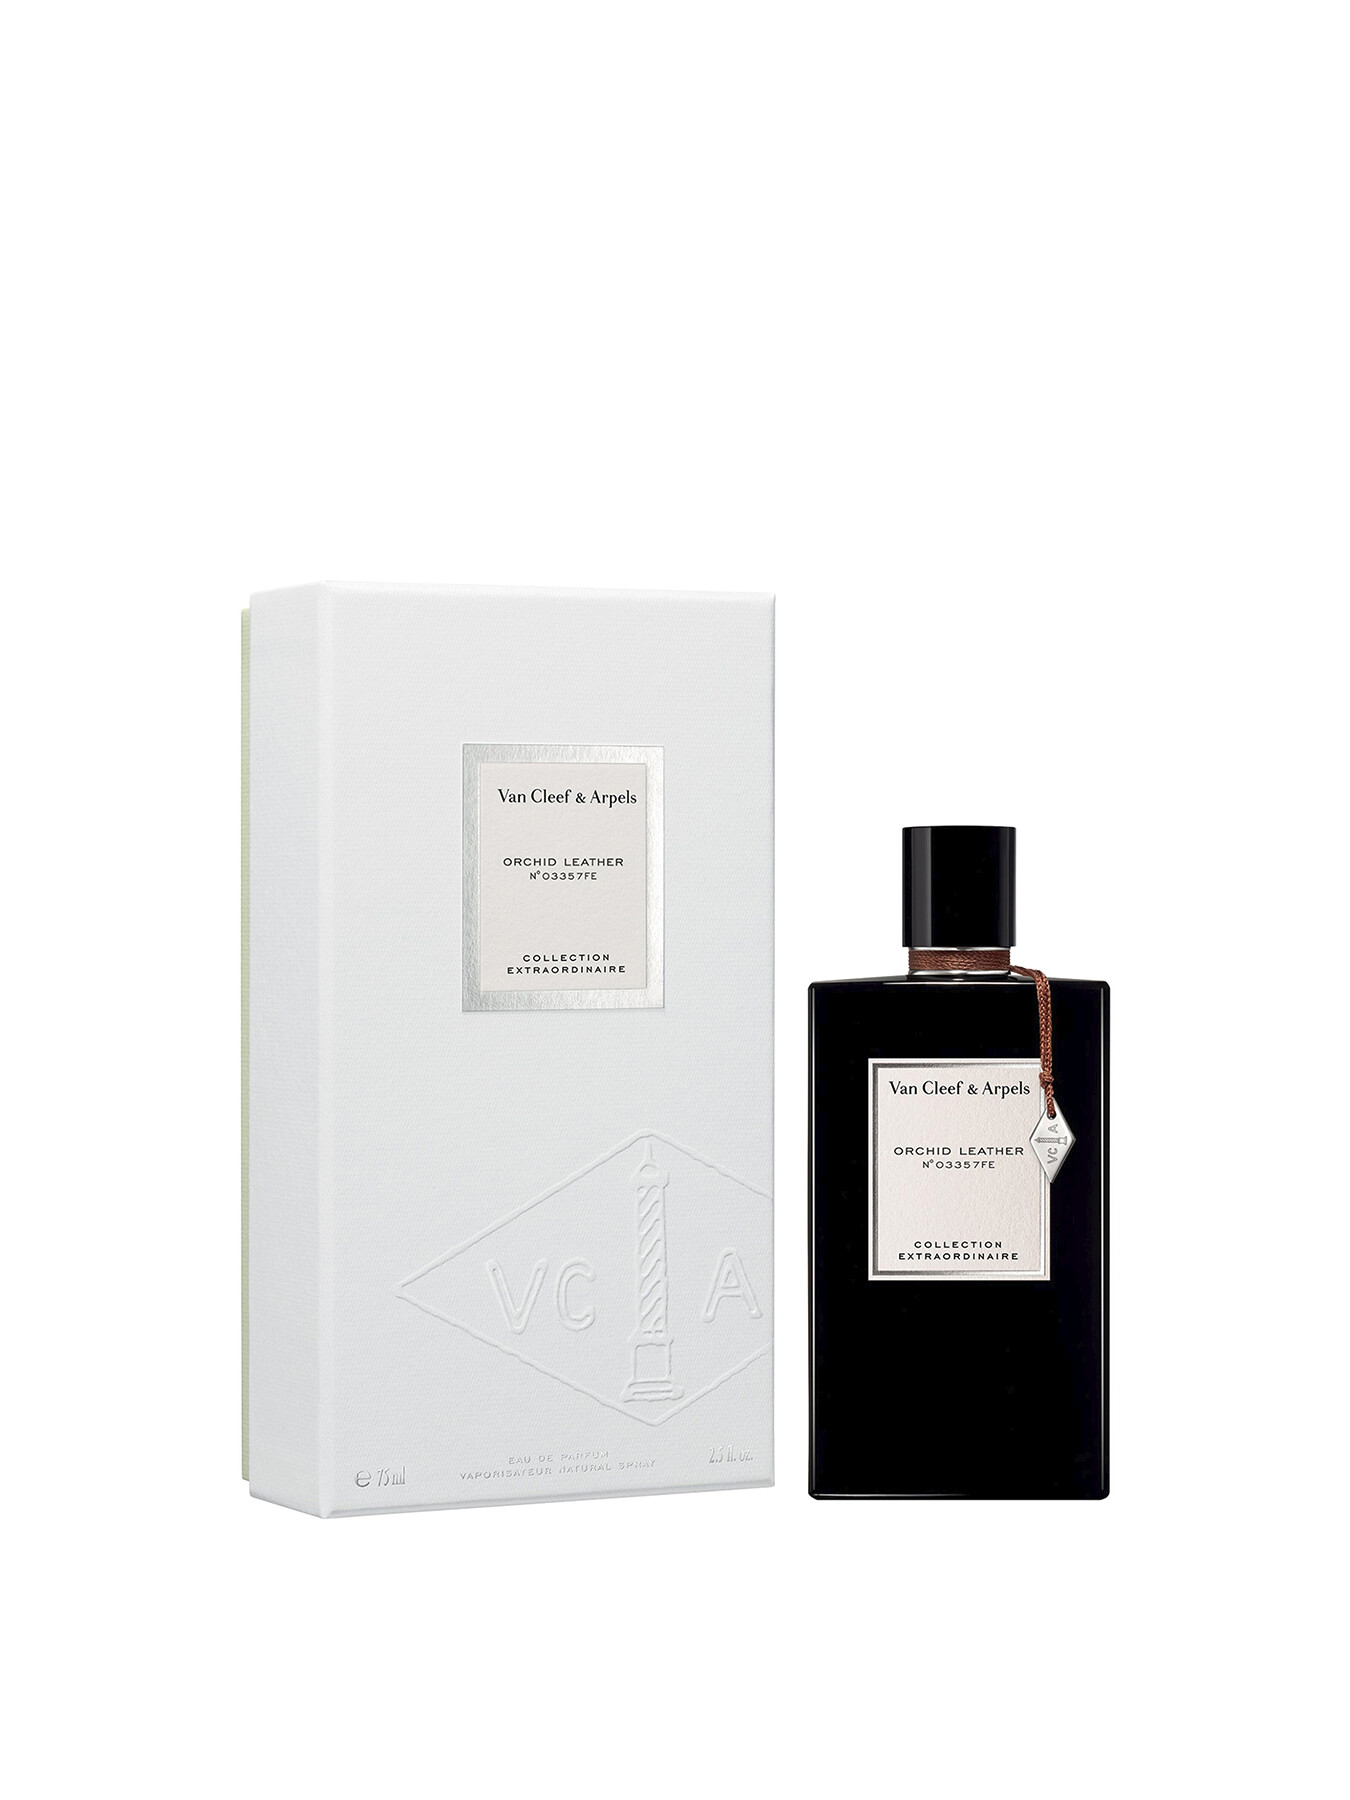 Van Cleef & Arpels Orchid Leather Eau de Parfum 75ml | Women's Fragrances |  Fenwick